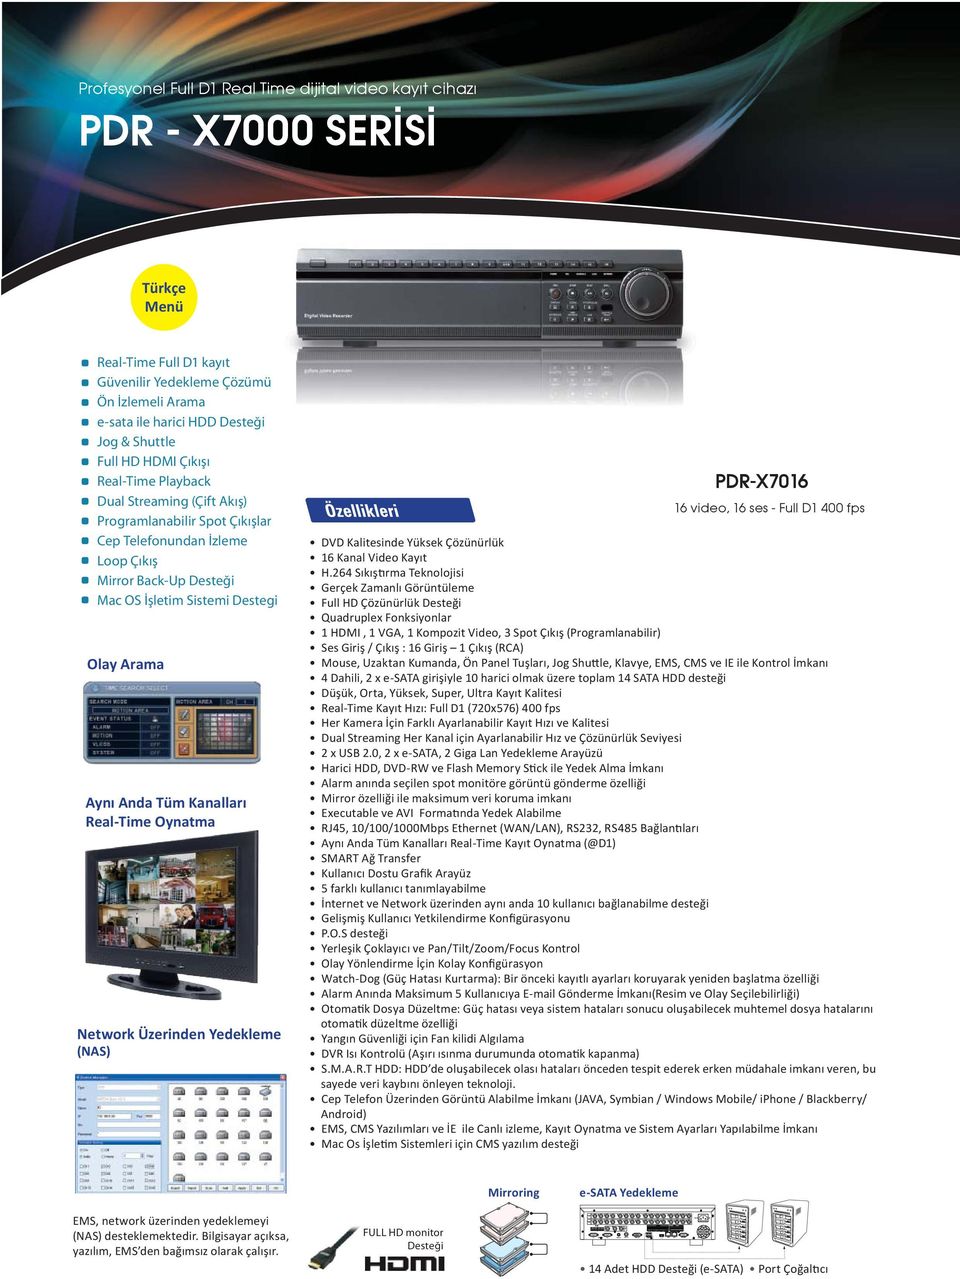 Arama Aynı Anda Tüm Kanalları Real-Time Oynatma Network Üzerinden Yedekleme (NAS) PDR-X7016 16 video, 16 ses - Full D1 400 fps DVD Kalitesinde Yüksek Çözünürlük 16 Kanal Video Kayıt Sıkıştırma